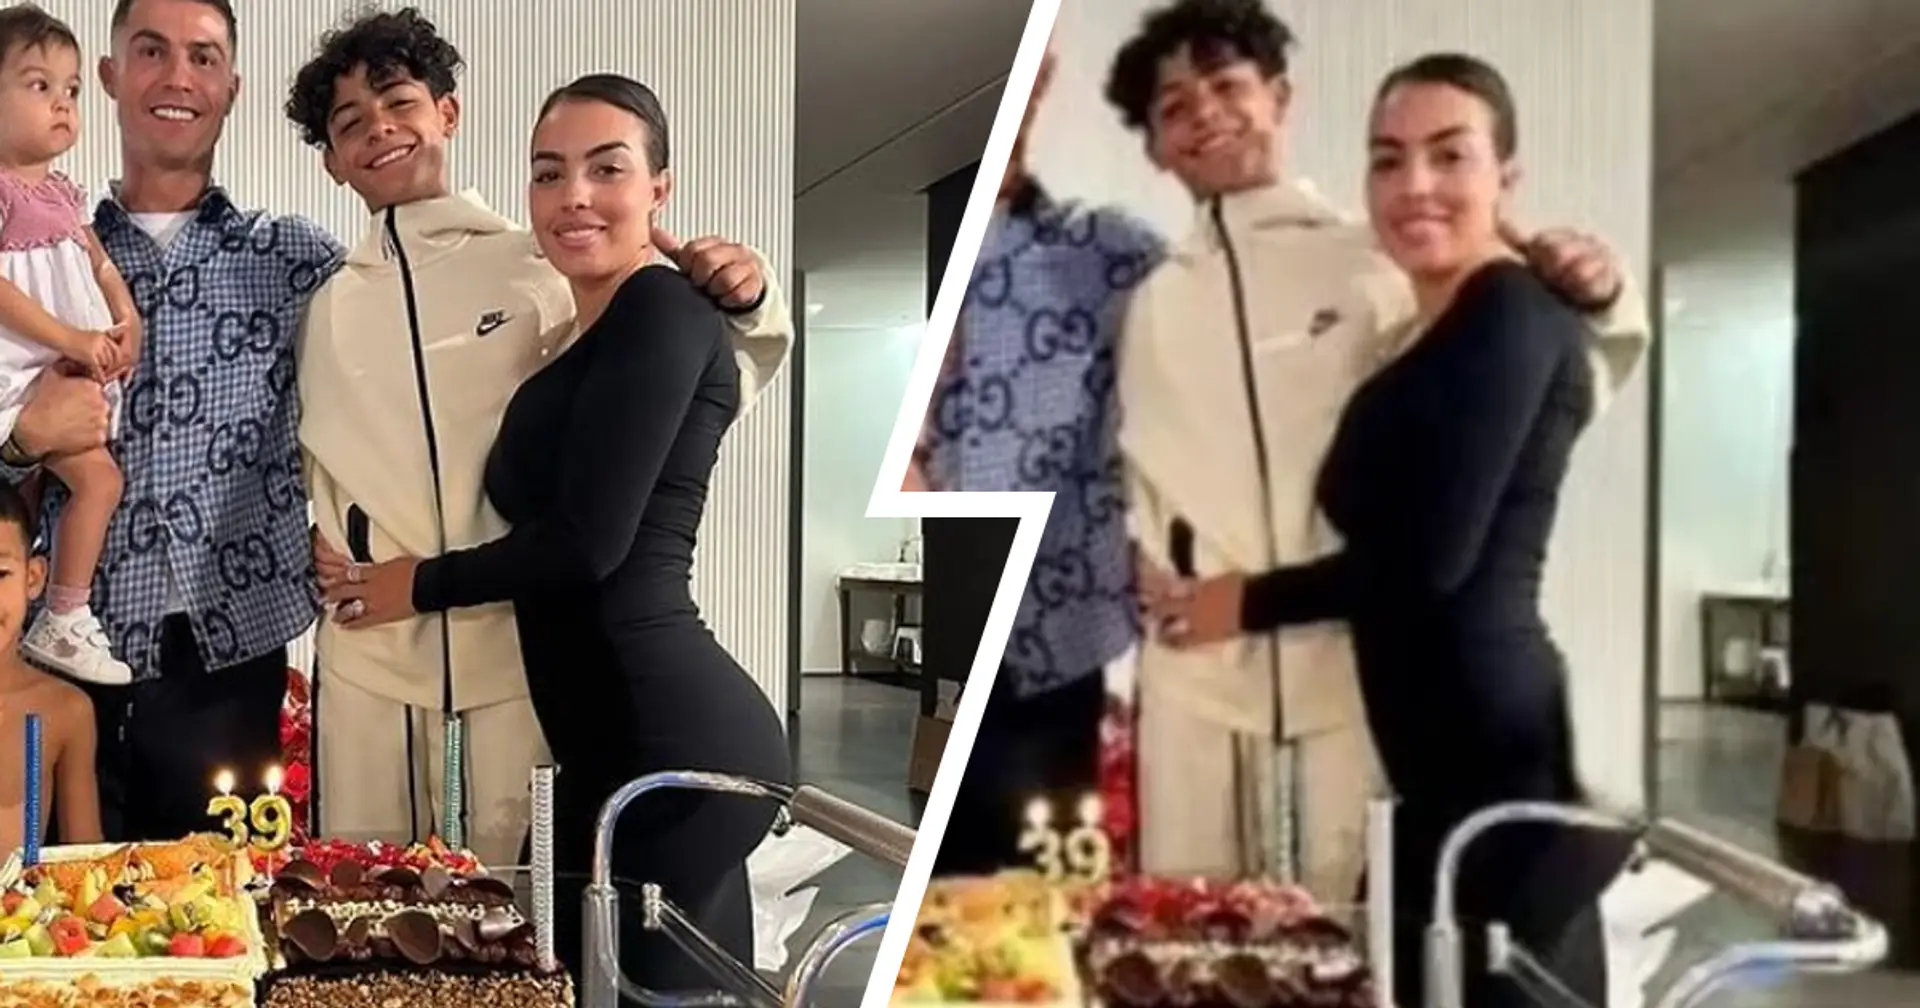 Ronaldo festeggia il 39° compleanno ma in Iran censurano il fondo schiena di Georgina: le IMMAGINI